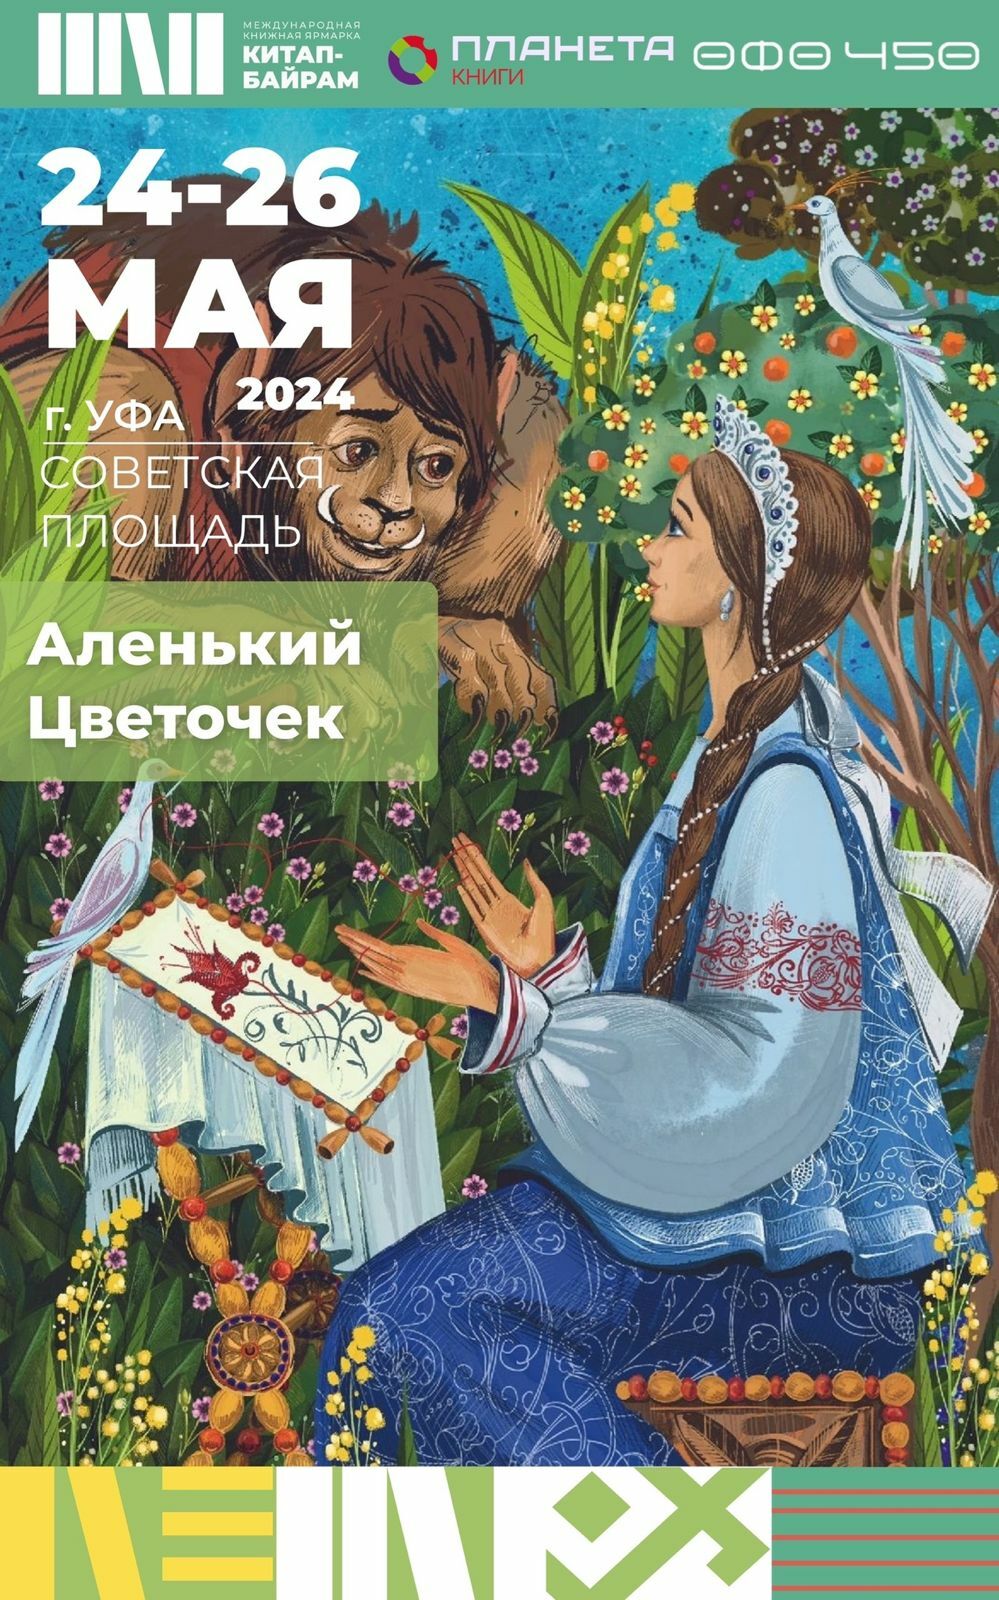 На ярмарке Китап-байрам представят уникальное издание книги Аленький цветочек